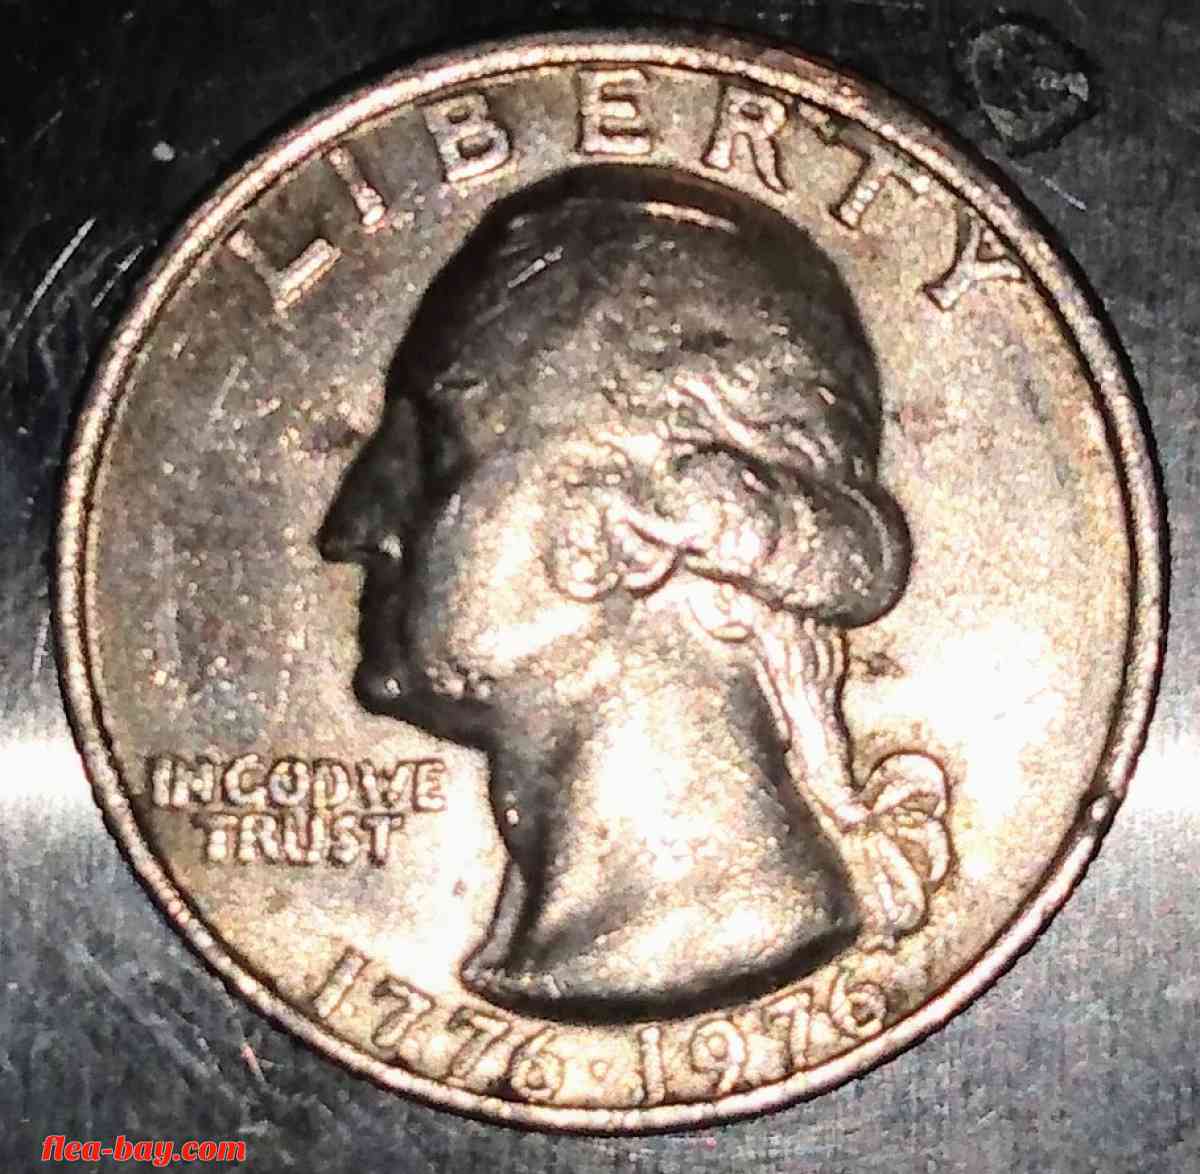 Transitional Bicentennial quarter dollar! 1776-1976/no mint